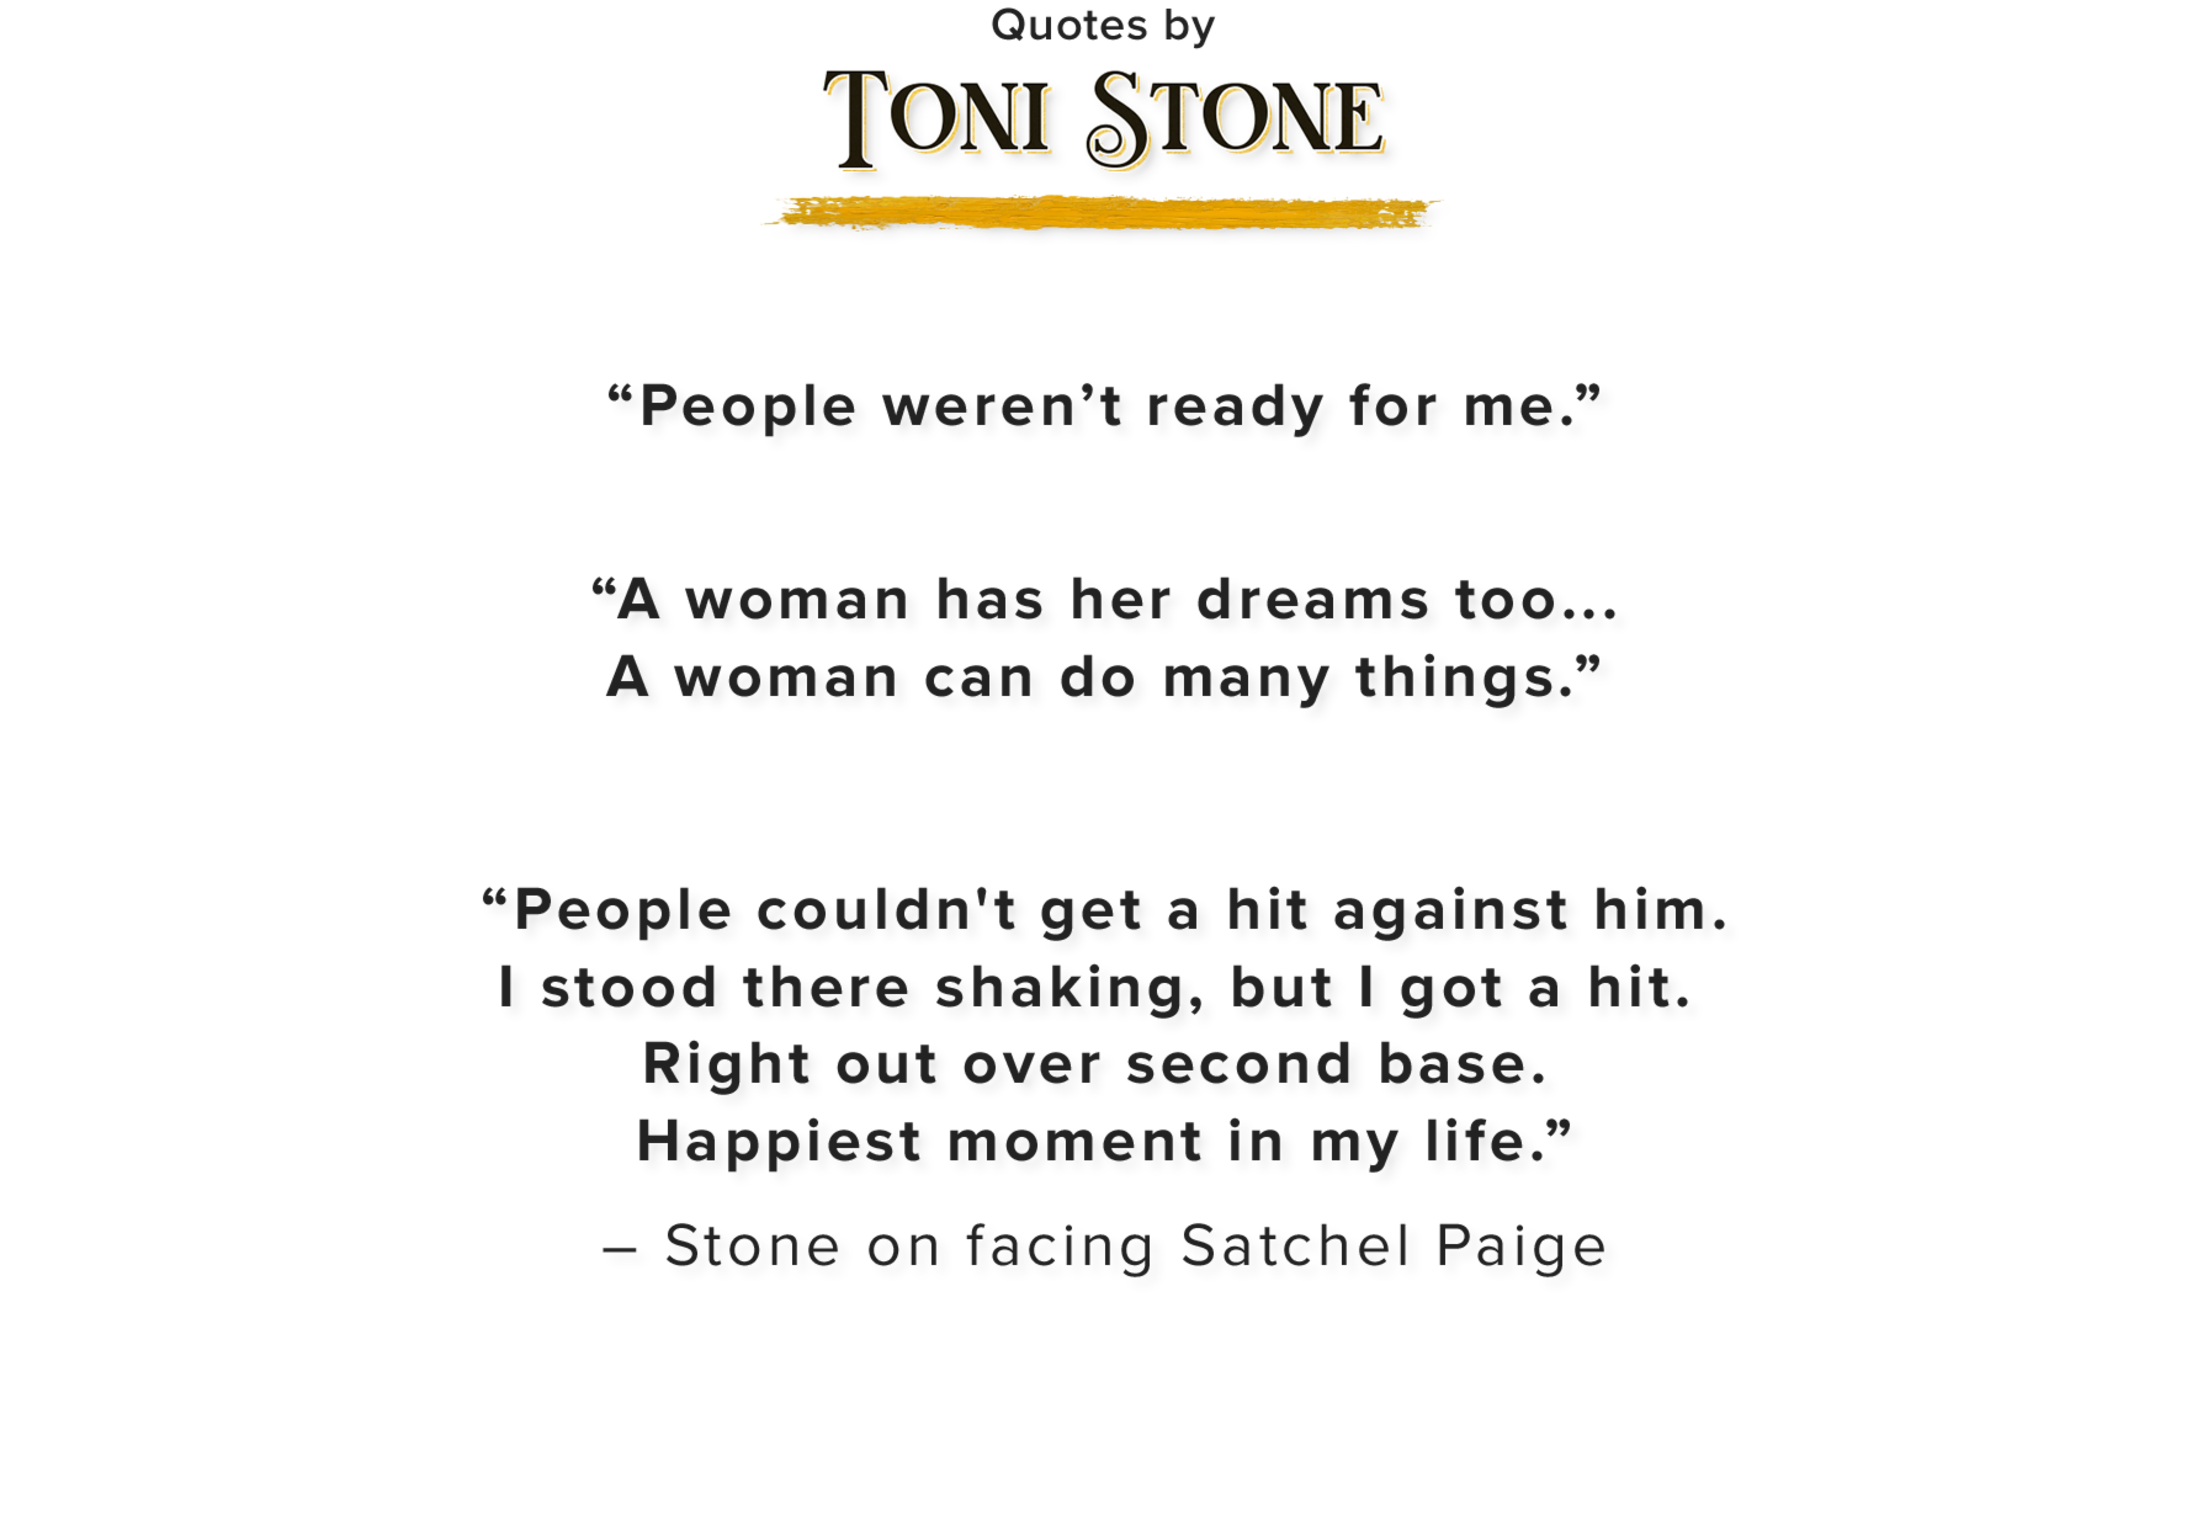 Toni Stone - Wikipedia